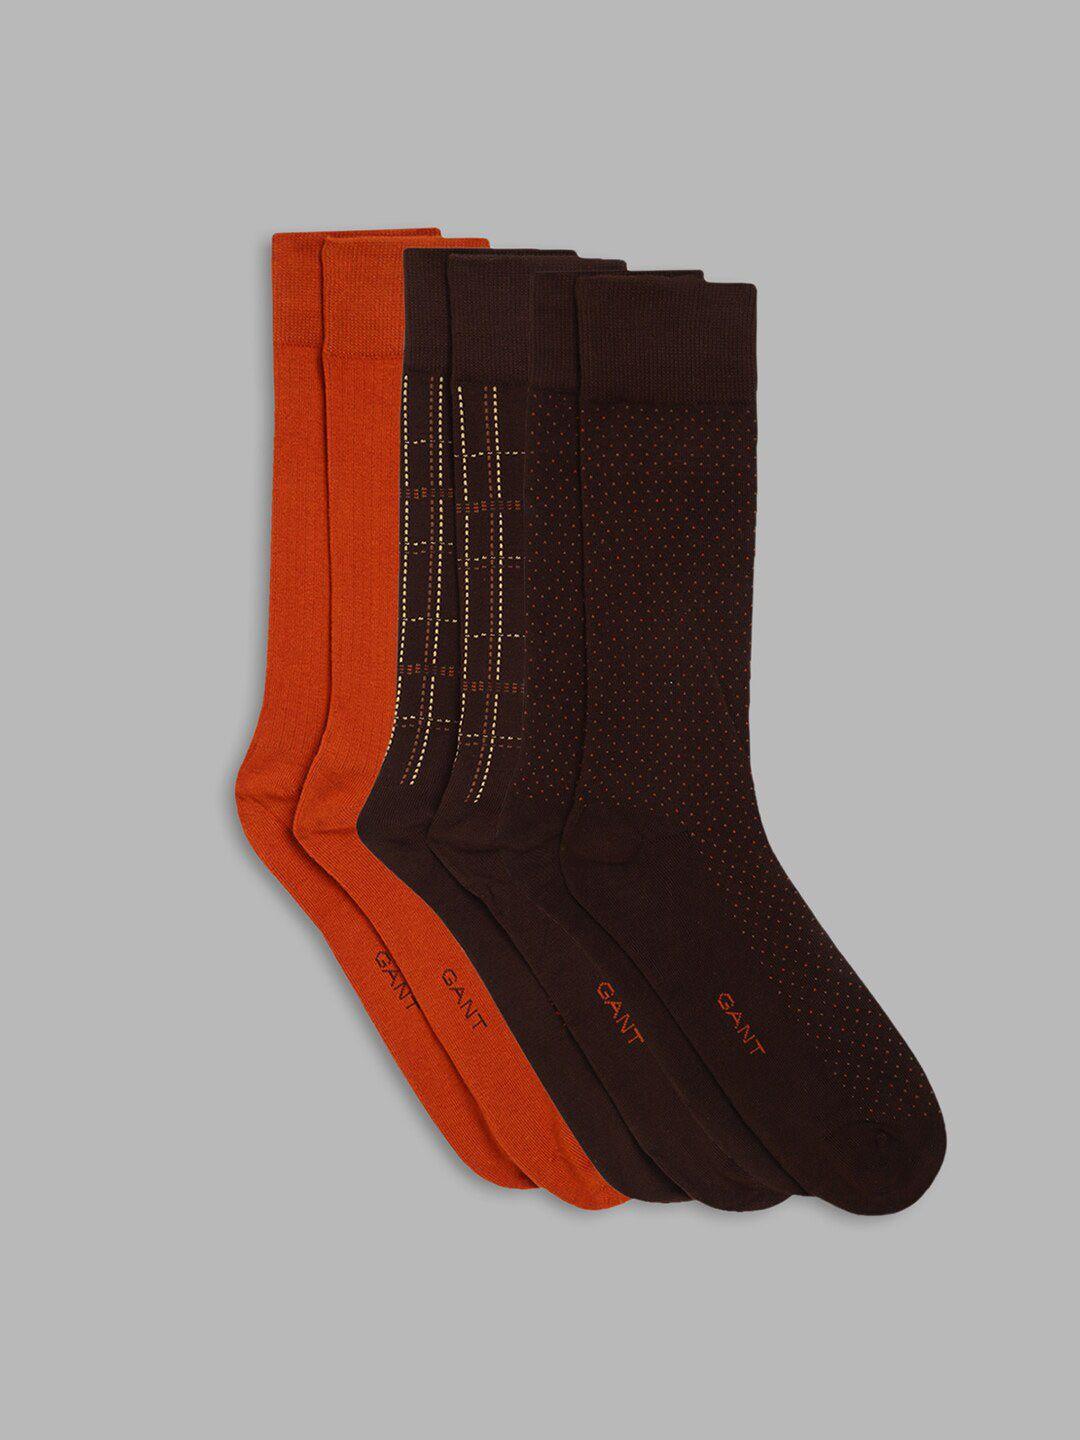 gant men pack of 3 brown and orange calf-length socks